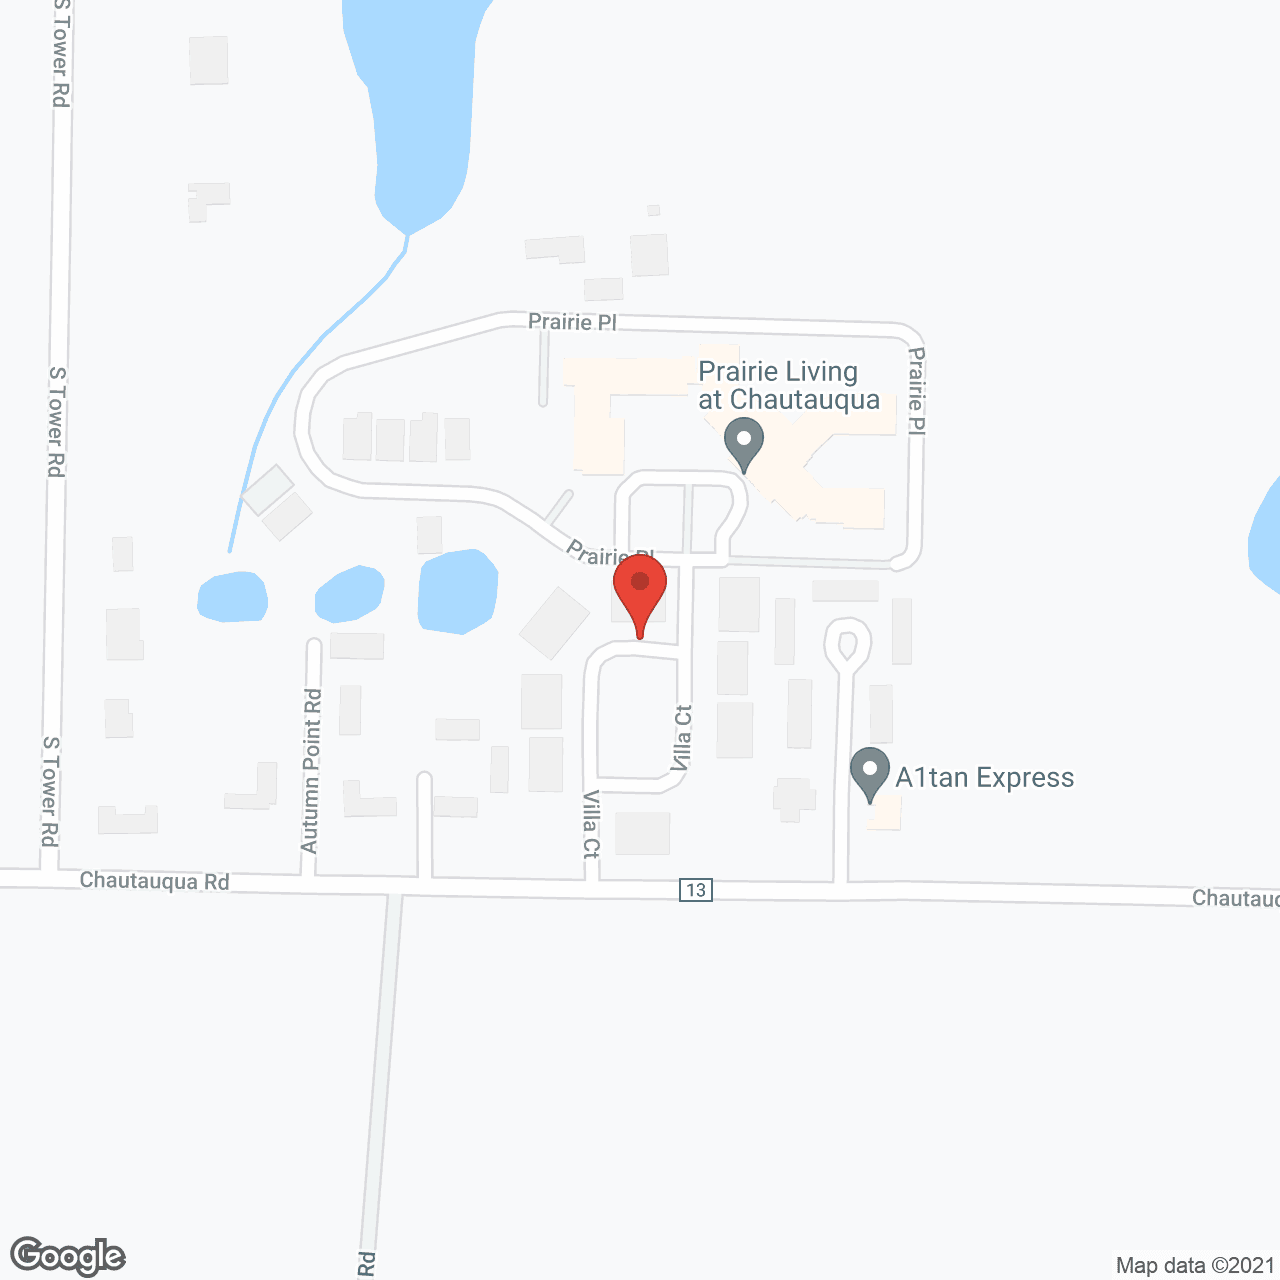 Prairie Living at Chautauqua in google map